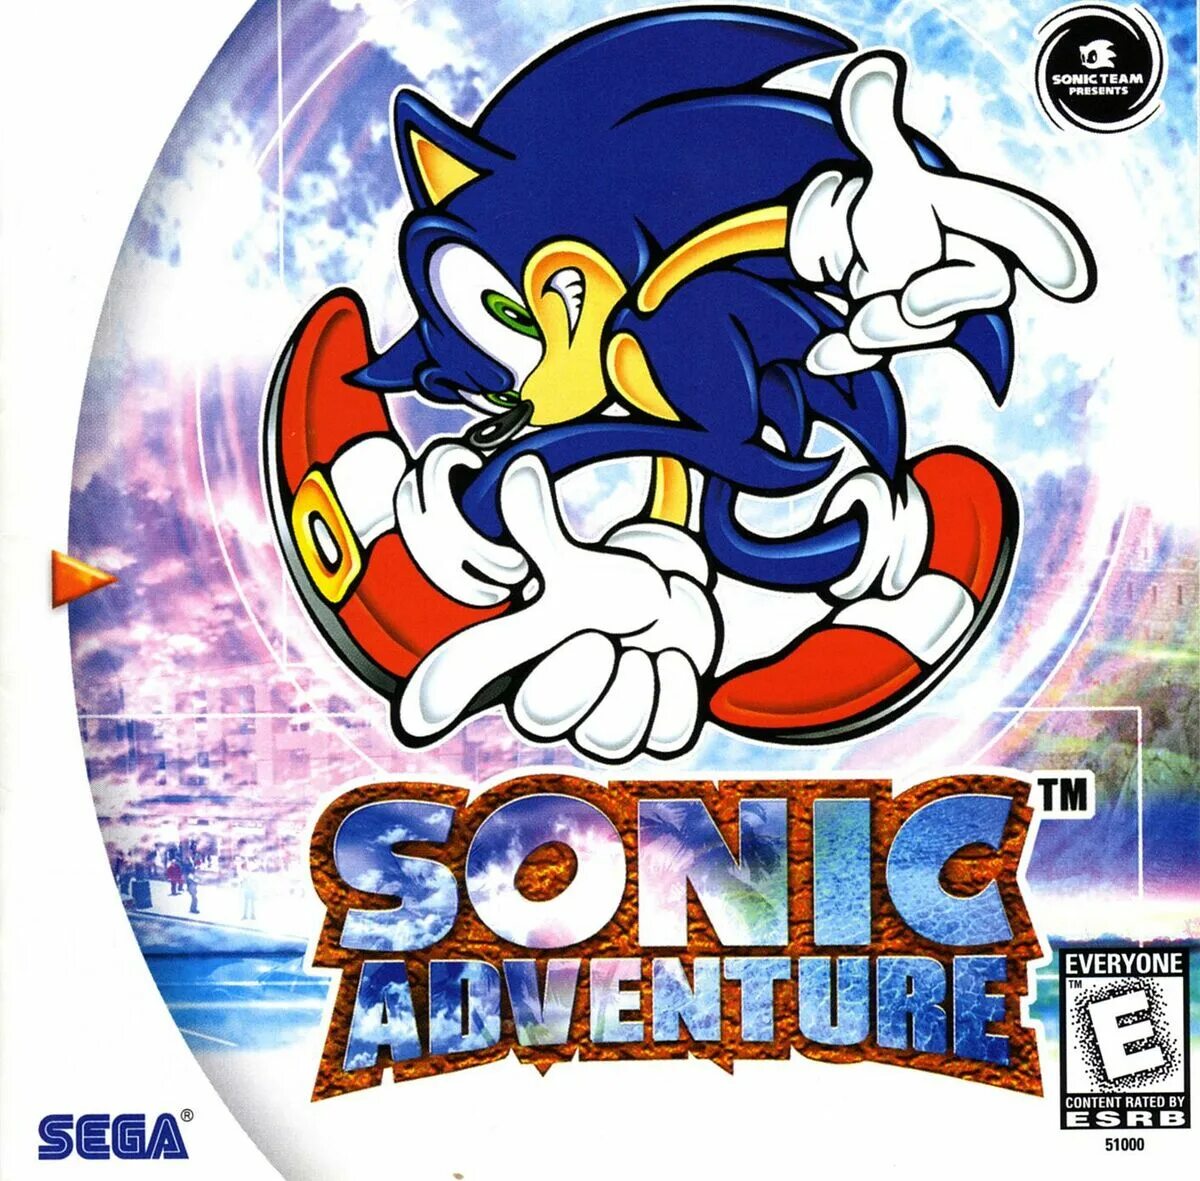 Sega Dreamcast Sonic Adventure 1998. Sega Dreamcast Sonic Adventure 2. Sonic Adventure 1-2. Sonic Adventure Dreamcast диск.